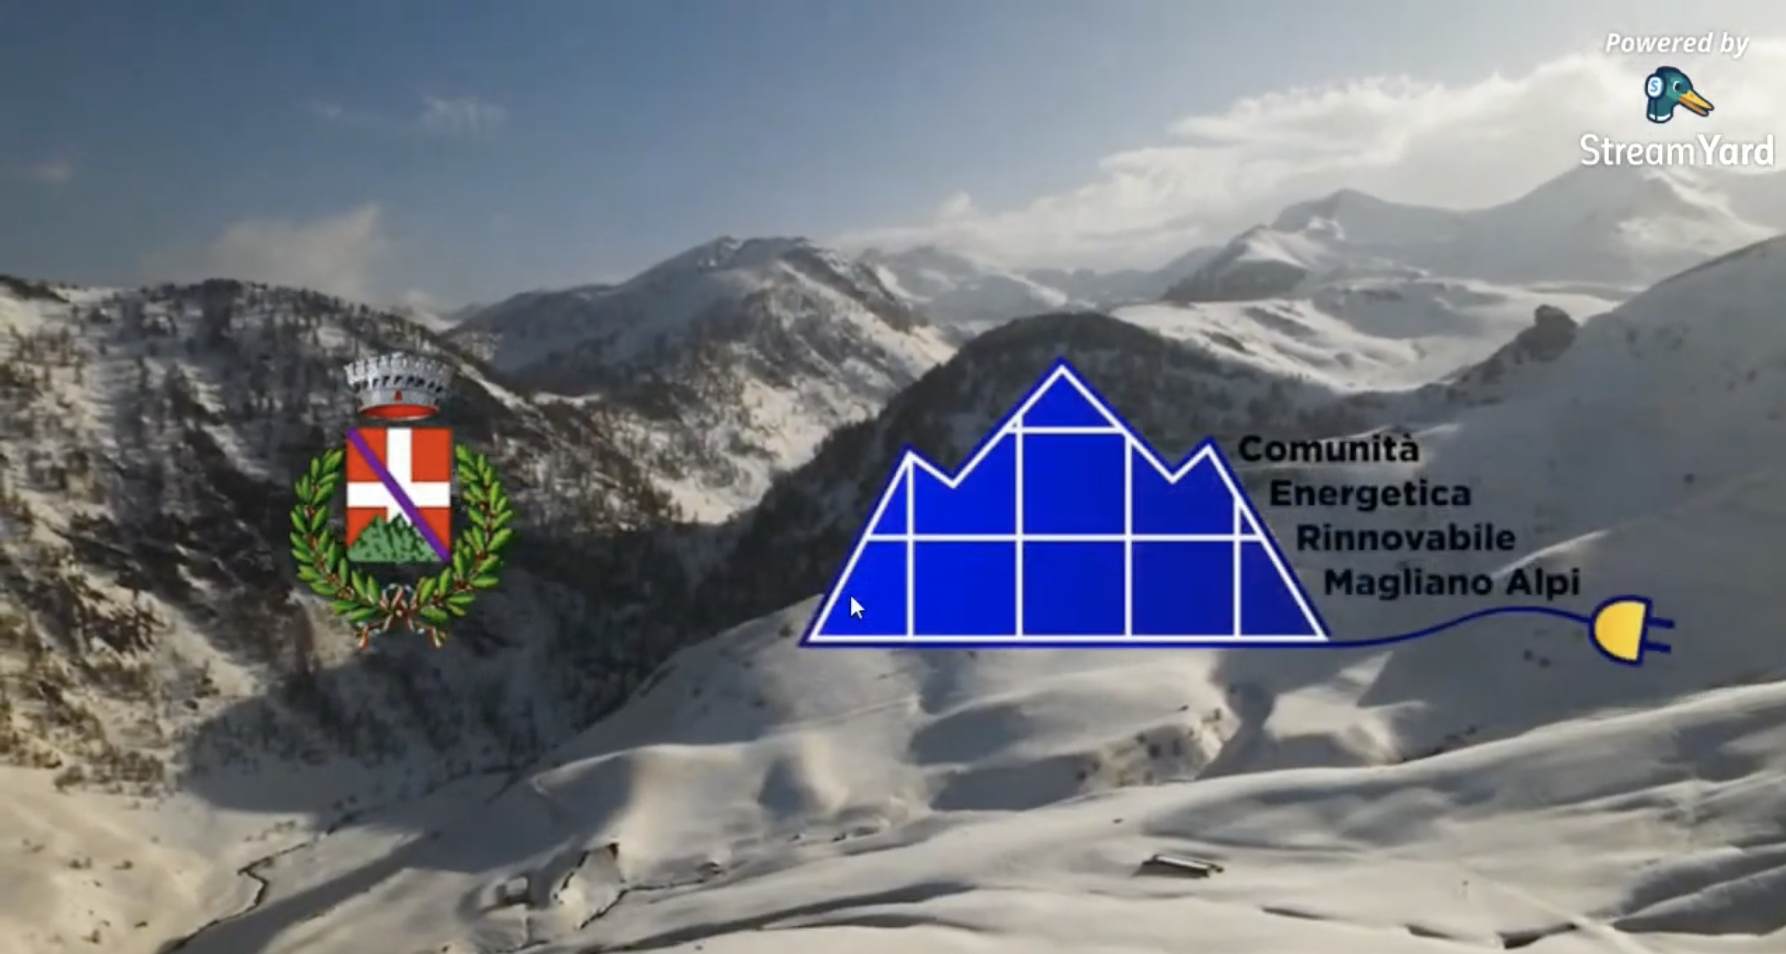 Rinnovabili • comunità energetica a Magliano Alpi